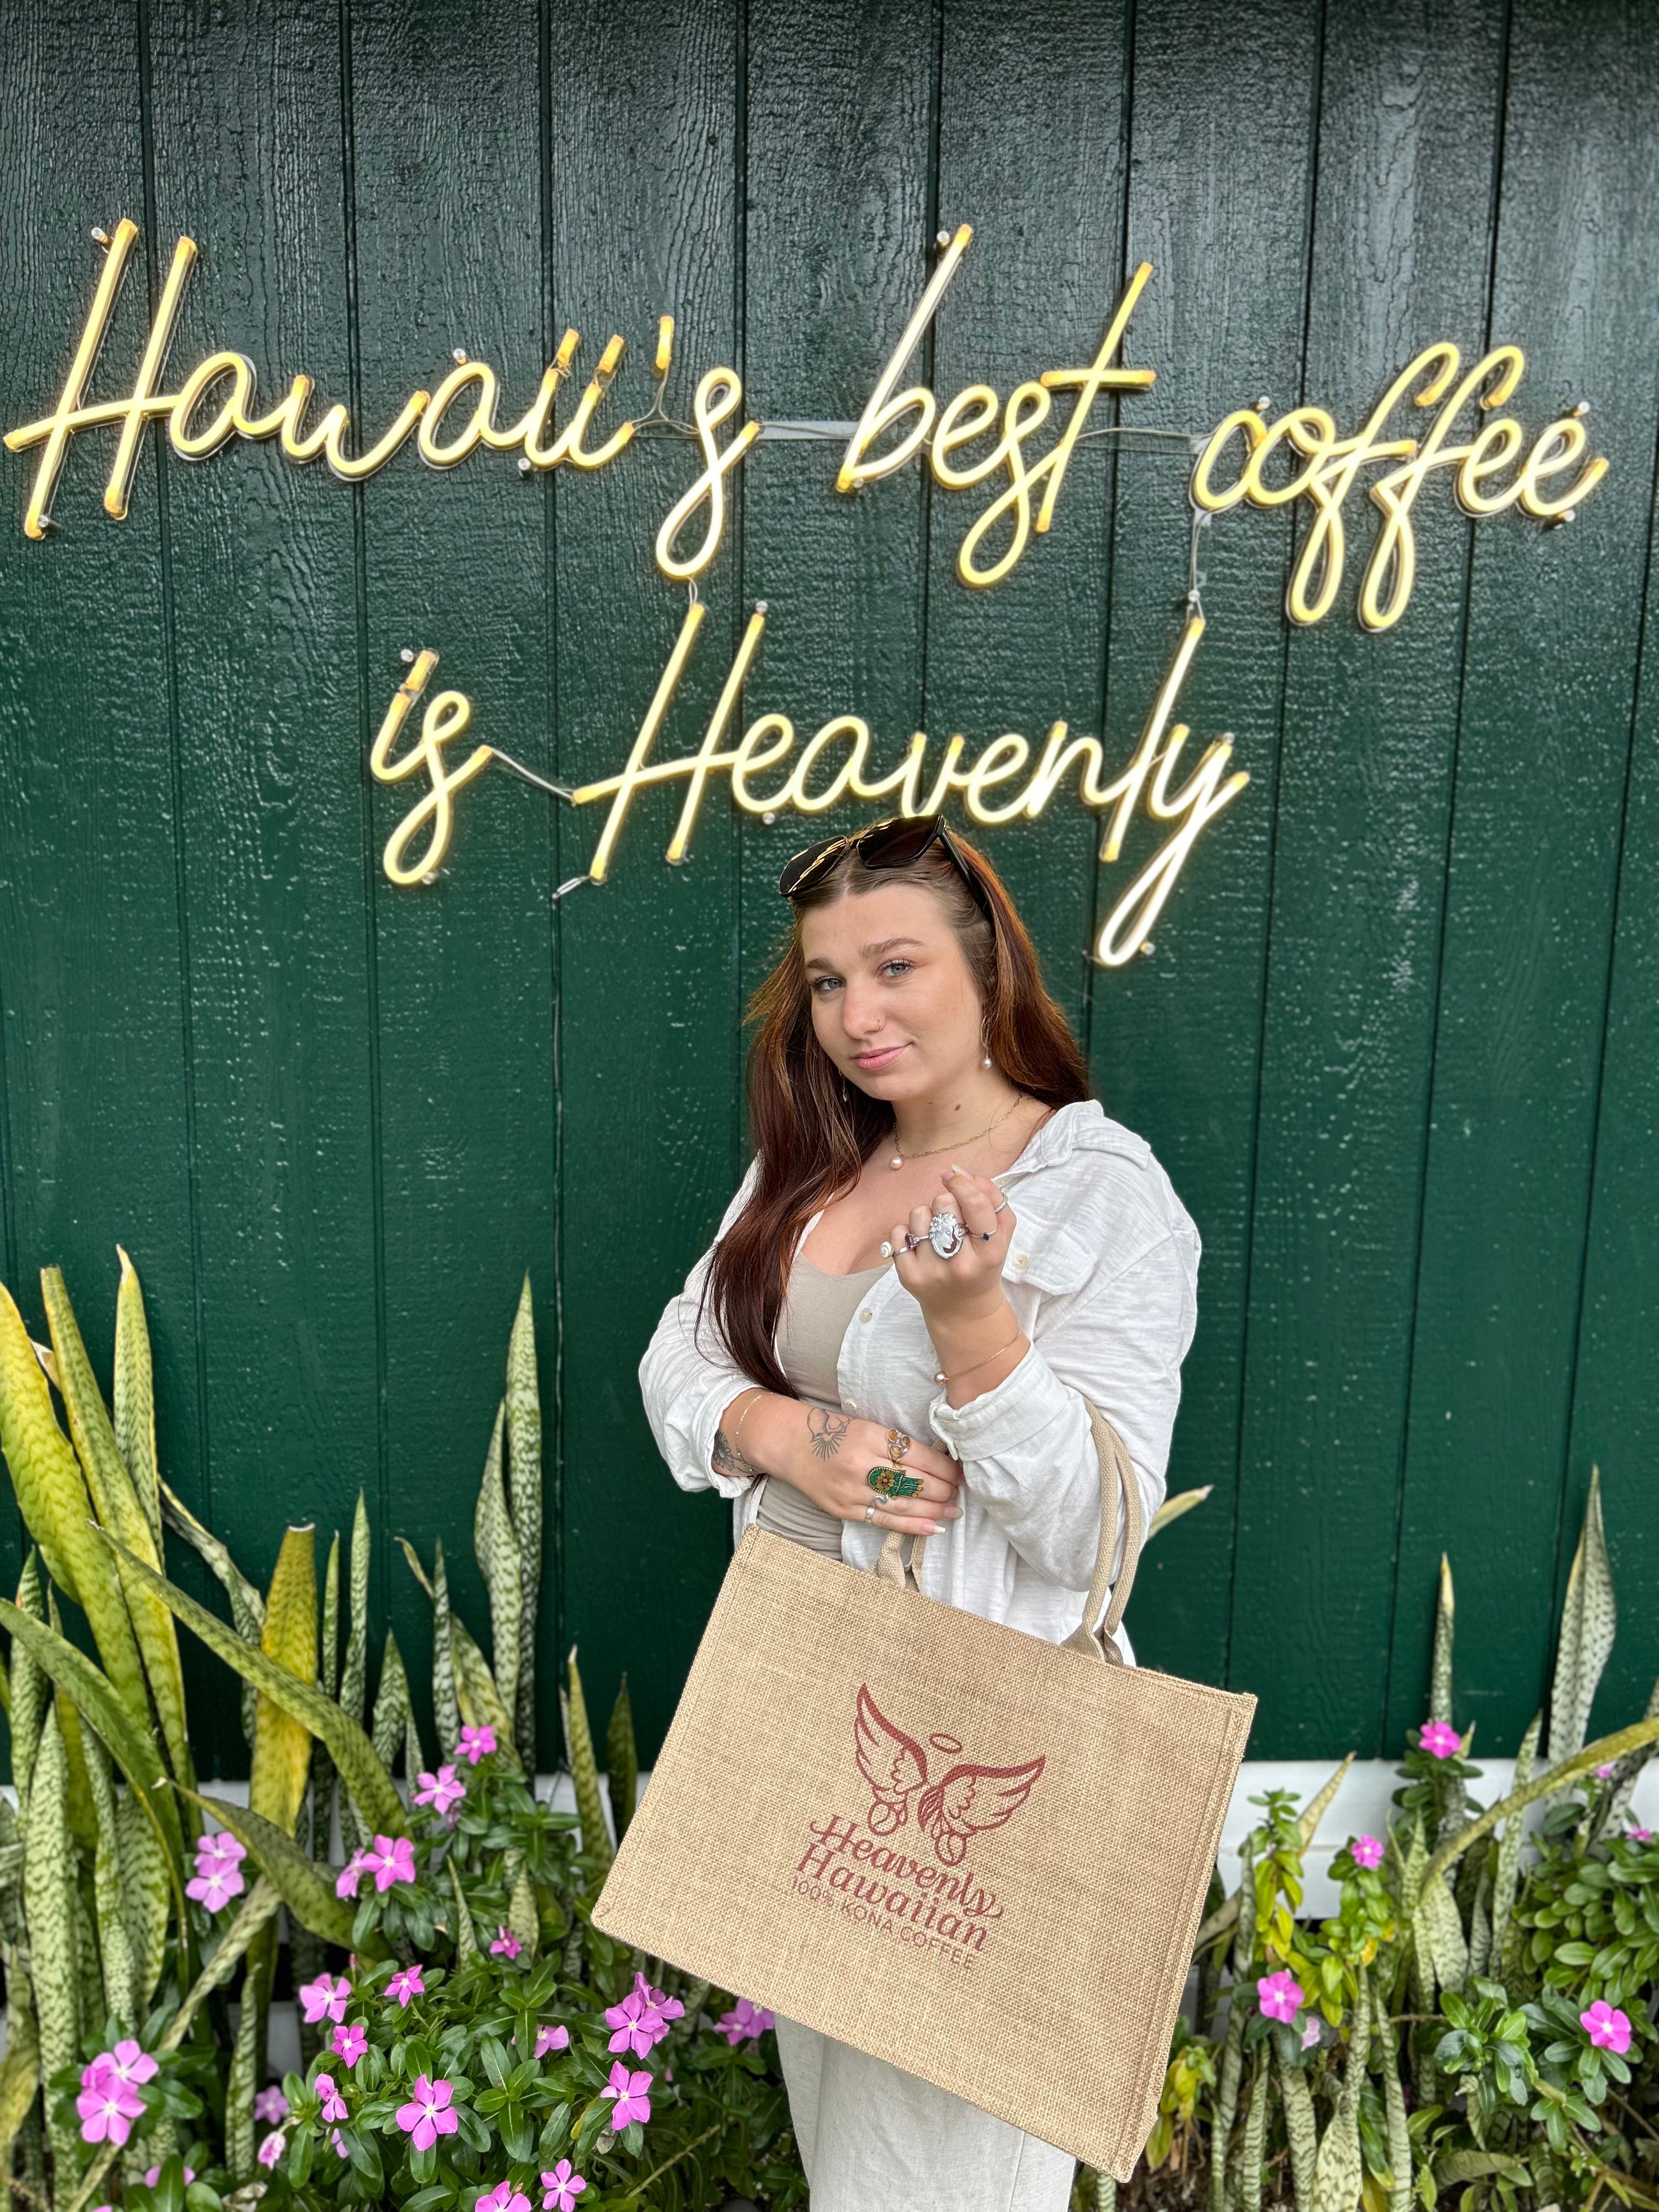 Heavenly Hawaiian Shopping Bag